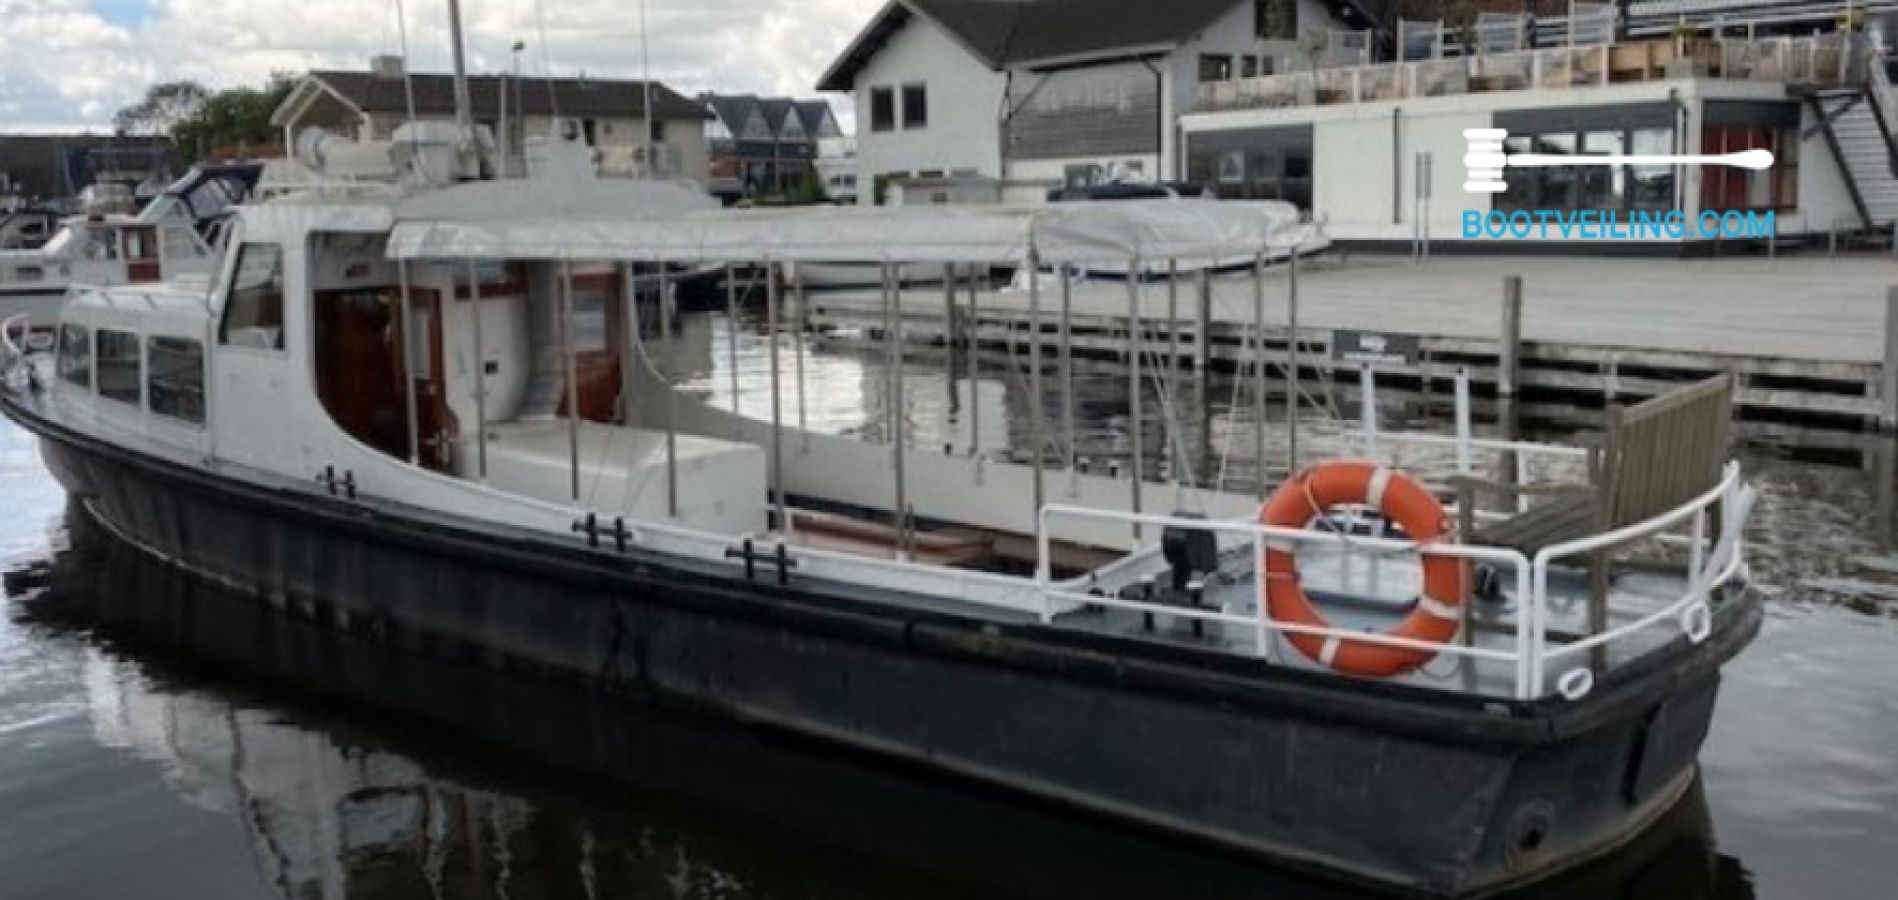 buste stapel tekst Duitse Patrouilleboot - 14.95 M - Motorjacht te koop - Bootveiling.com